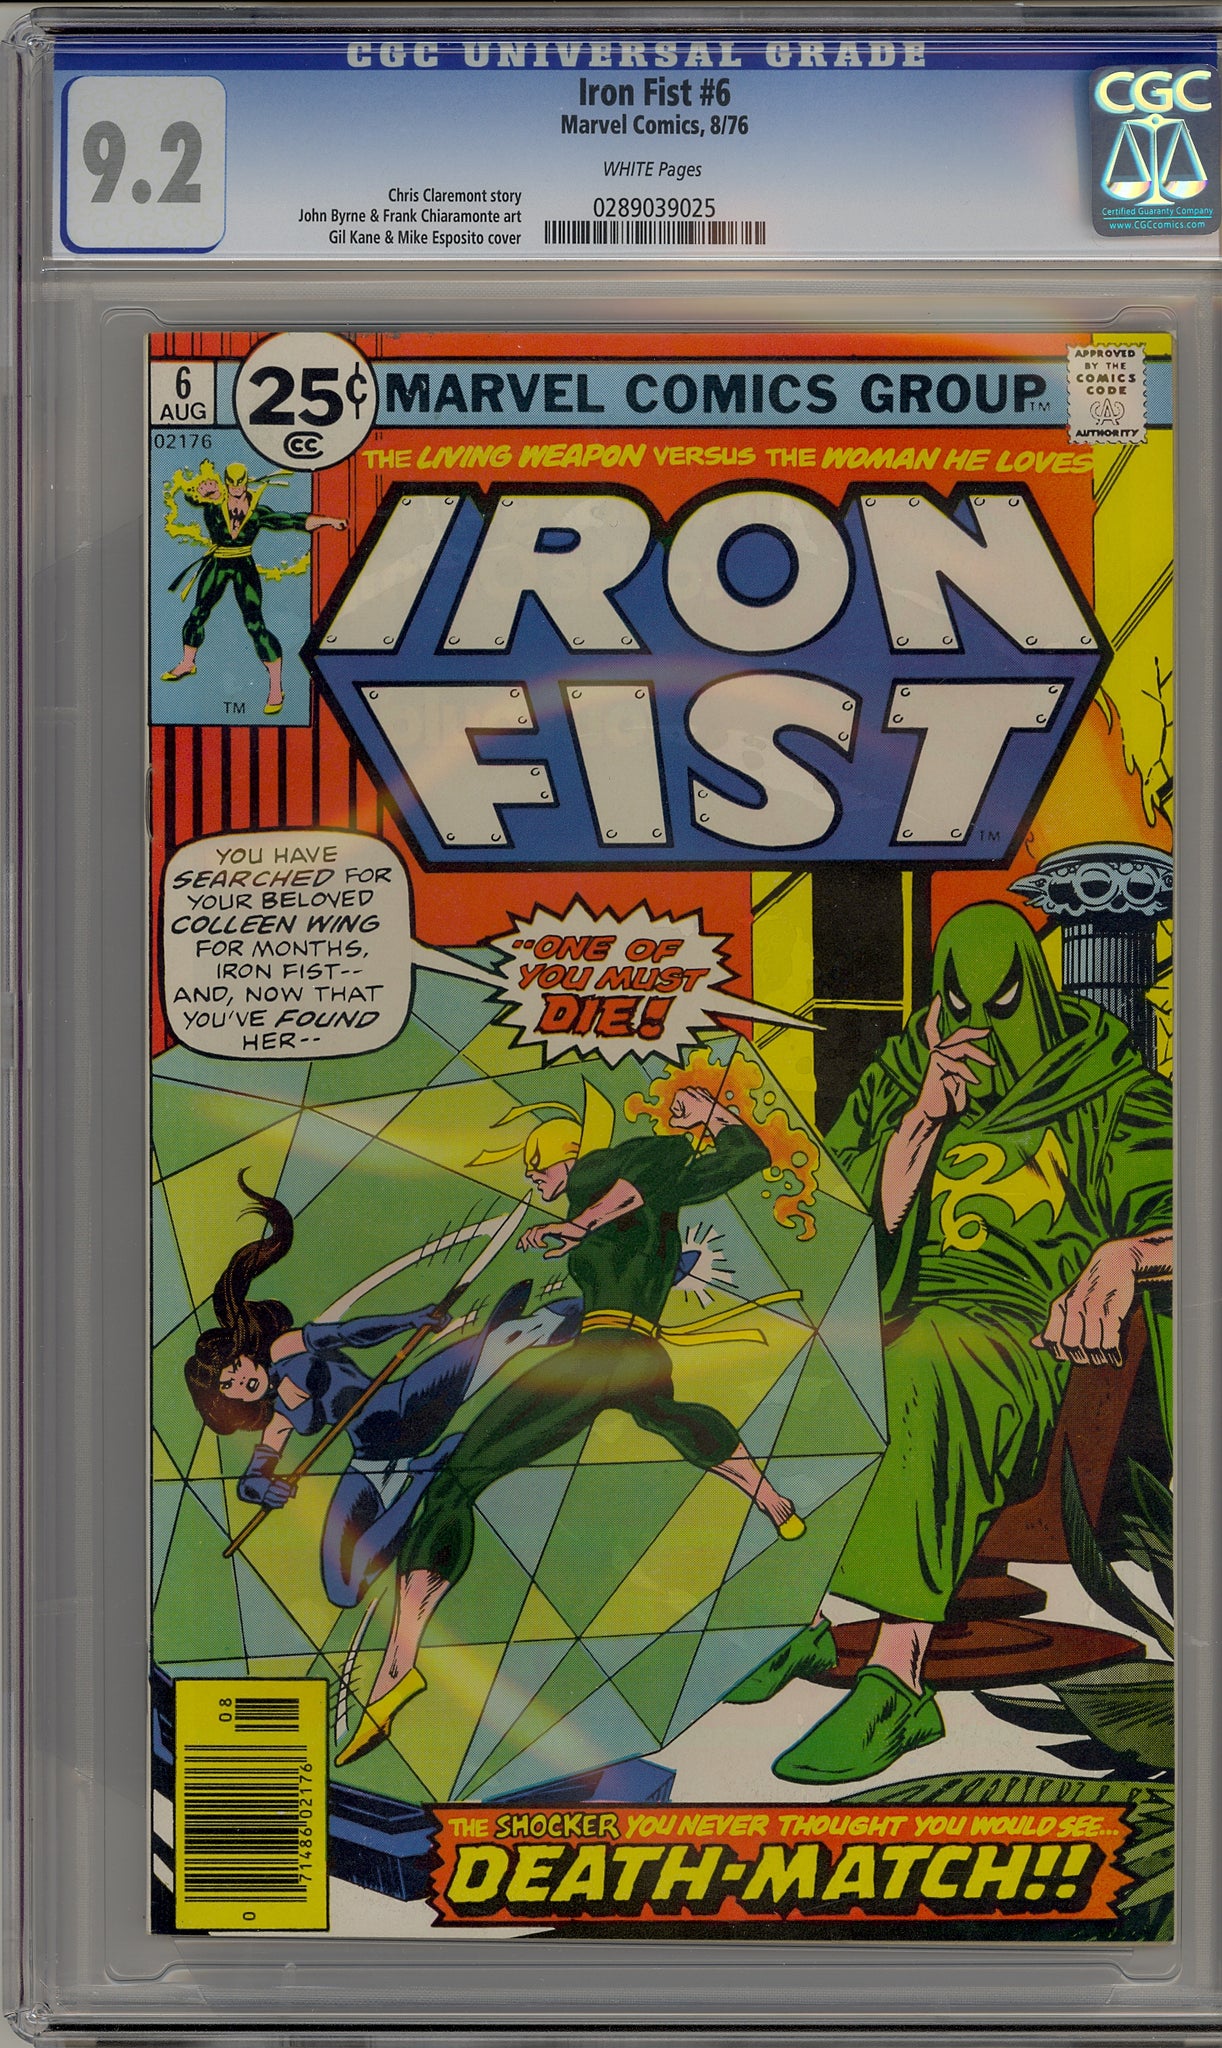 Iron Fist #6 (1976)